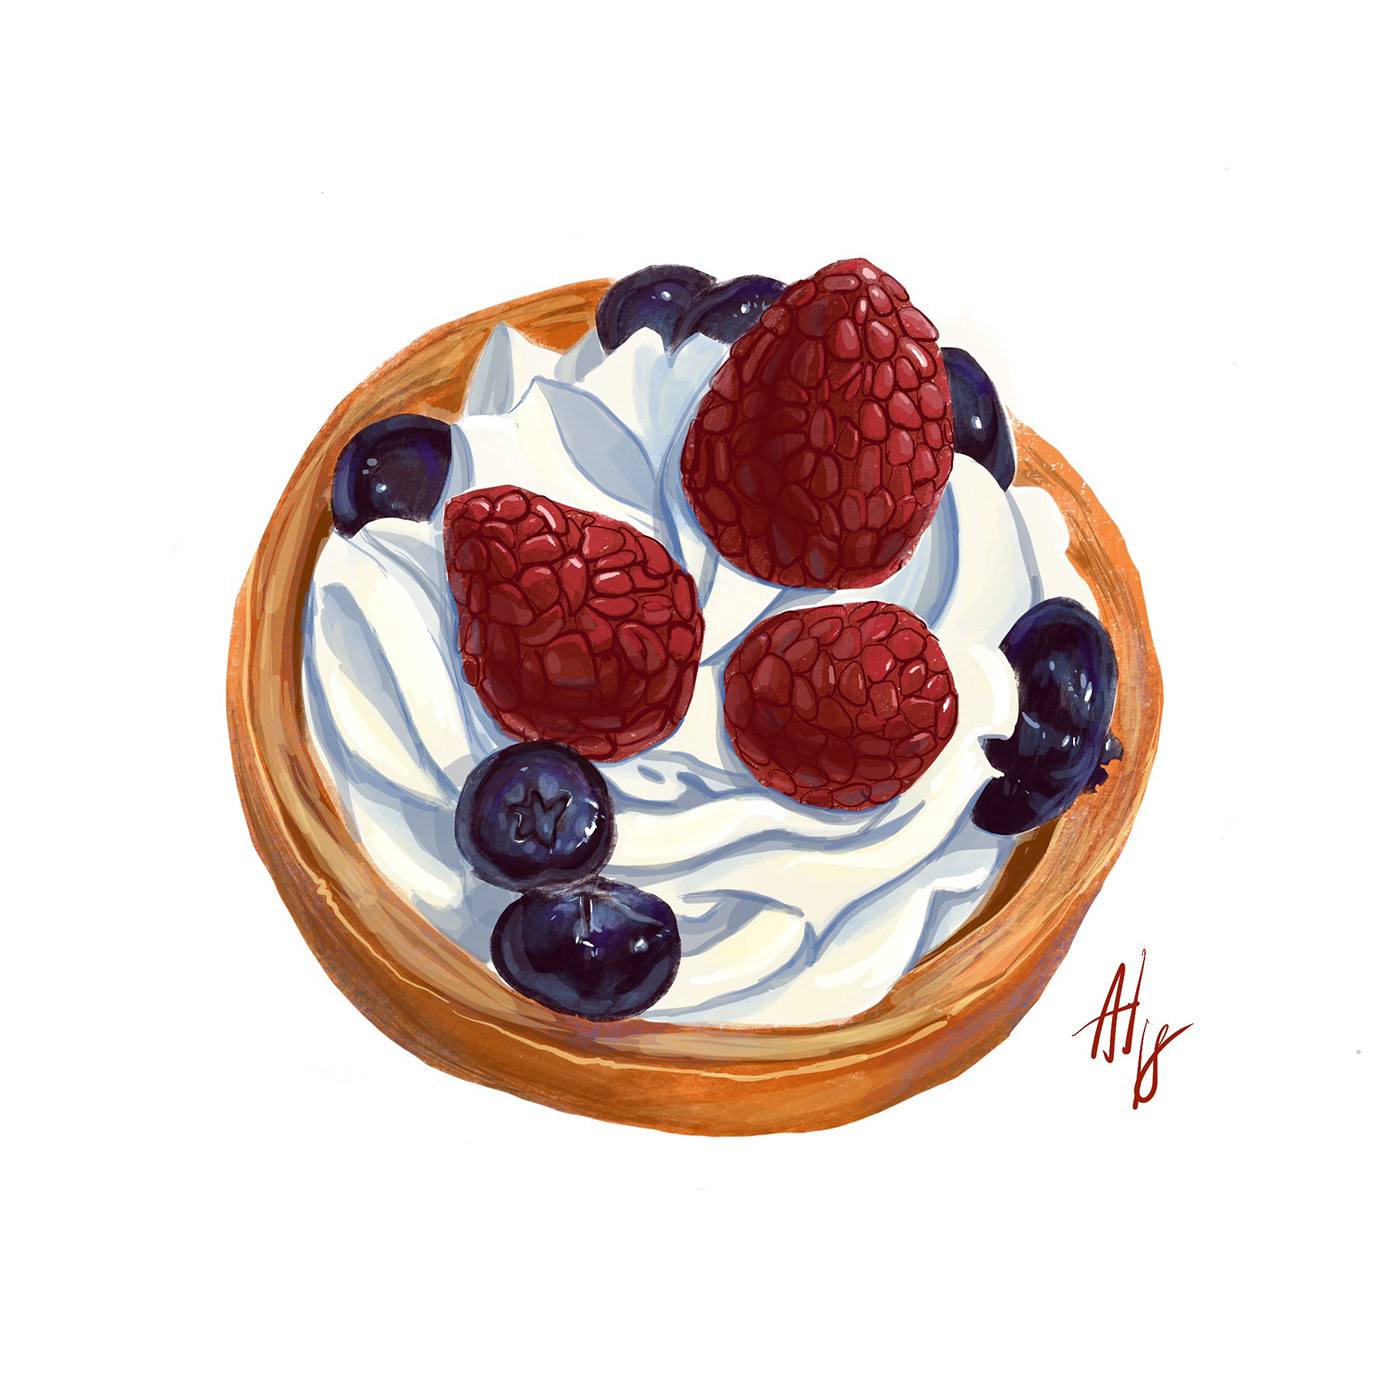 art cake digital drawings Food  illustrations painting   sketch арт дизайн еда живопись иллюстрация креатив меню пирожные рисунок стилизация цифровая иллюстрация